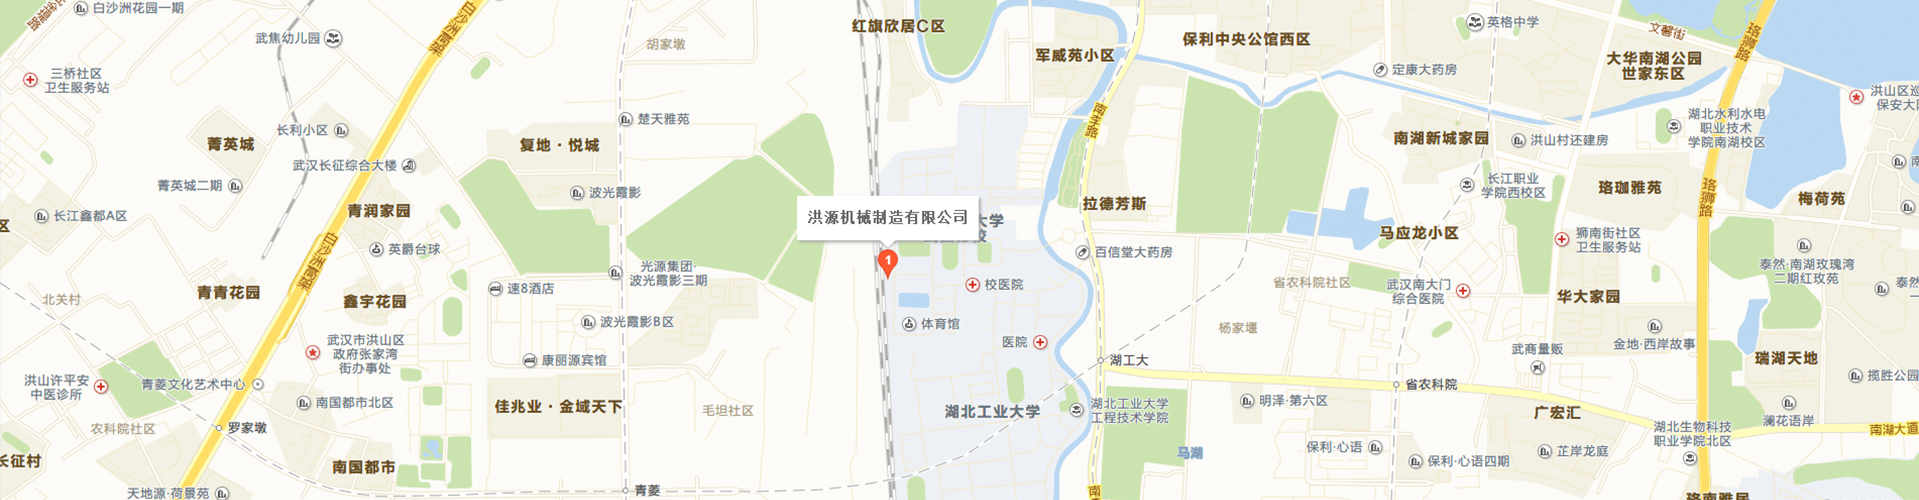 乐动ld体育-(中国)官方网站IOS/安卓通用版/手机APP厂家地图